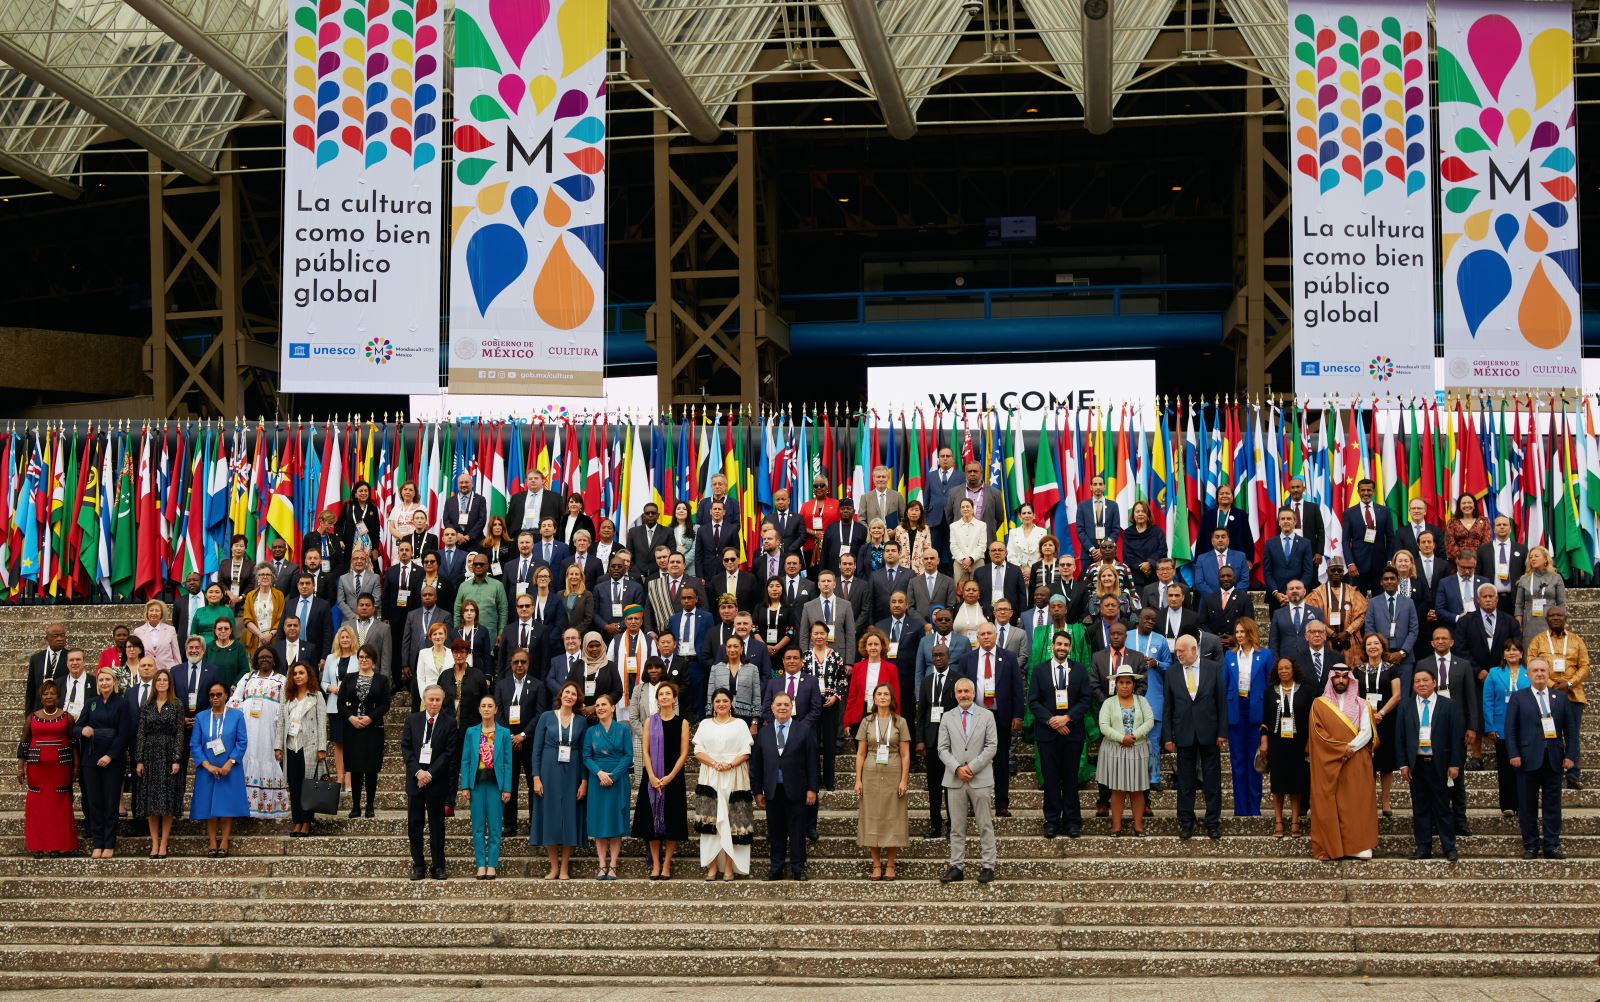 Hội nghị Thế giới về Chính sách văn hóa và Phát triển bền vững: Nỗ lực để văn hóa  mang lại sự hòa hợp, gắn kết các dân tộc